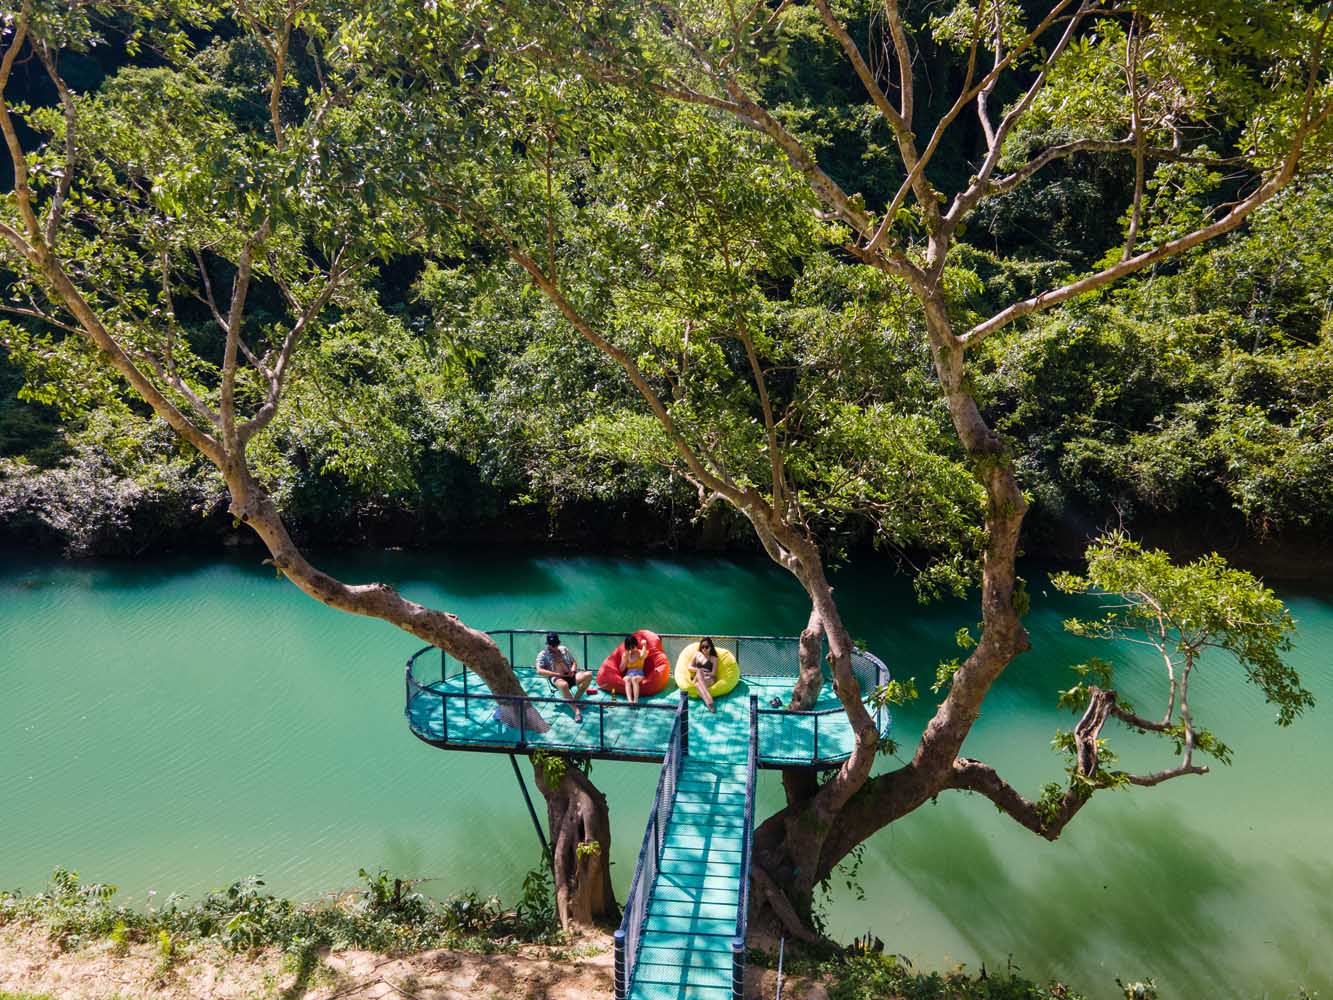 Thư giãn tại nhà trên cây ven suối Blue - góc nhỏ bình yên giữa lòng thiên nhiên Phong Nha.